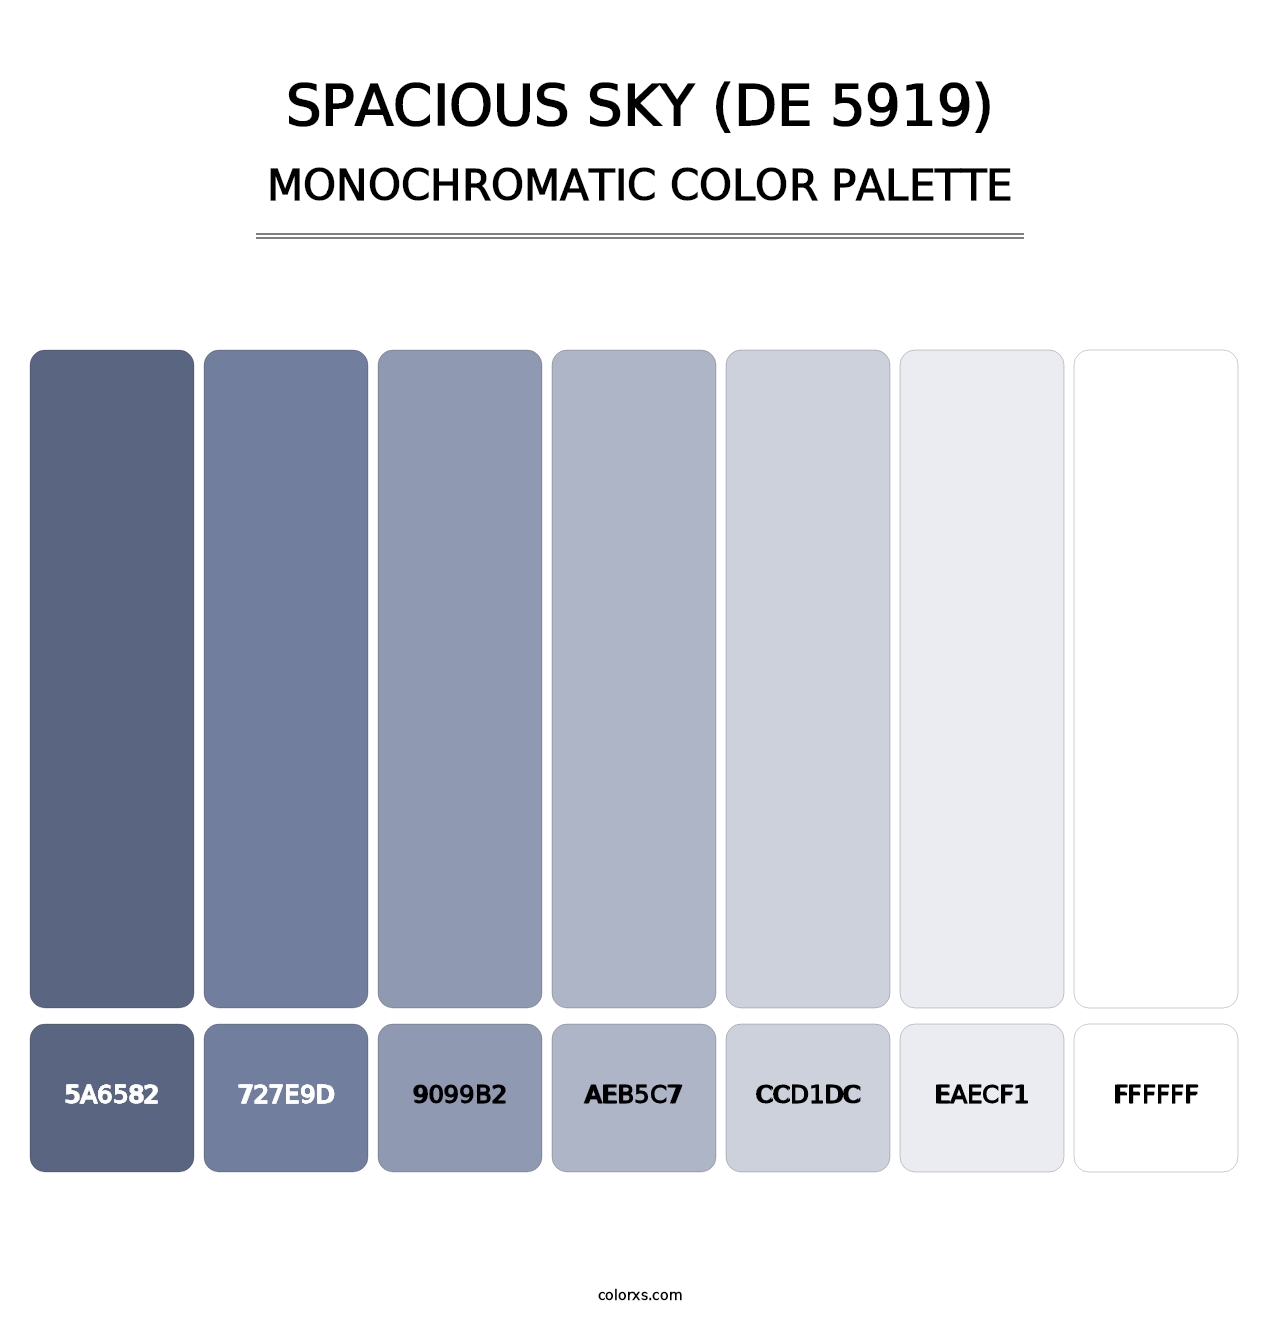 Spacious Sky (DE 5919) - Monochromatic Color Palette